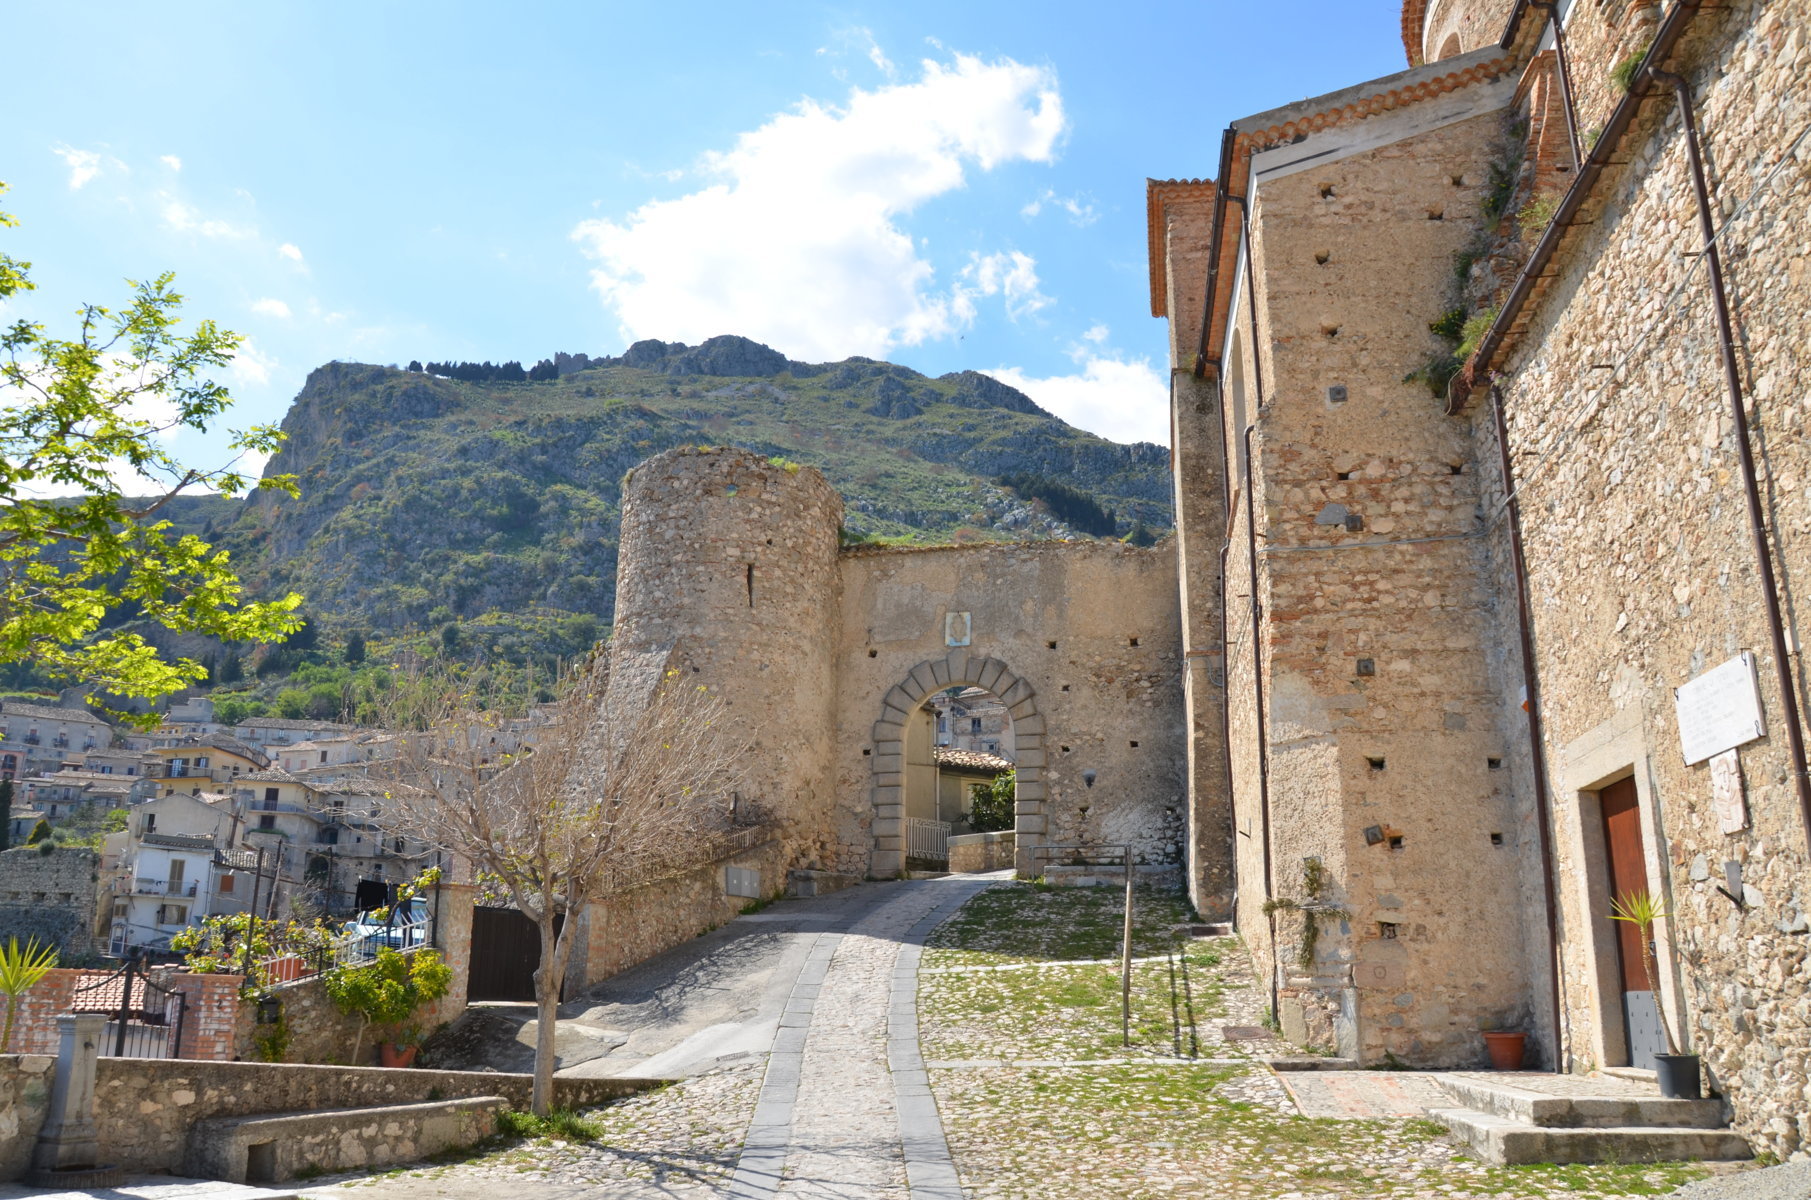 Stilo - Tour - Escursione - Guide Turistiche Associate Calabria - Italy